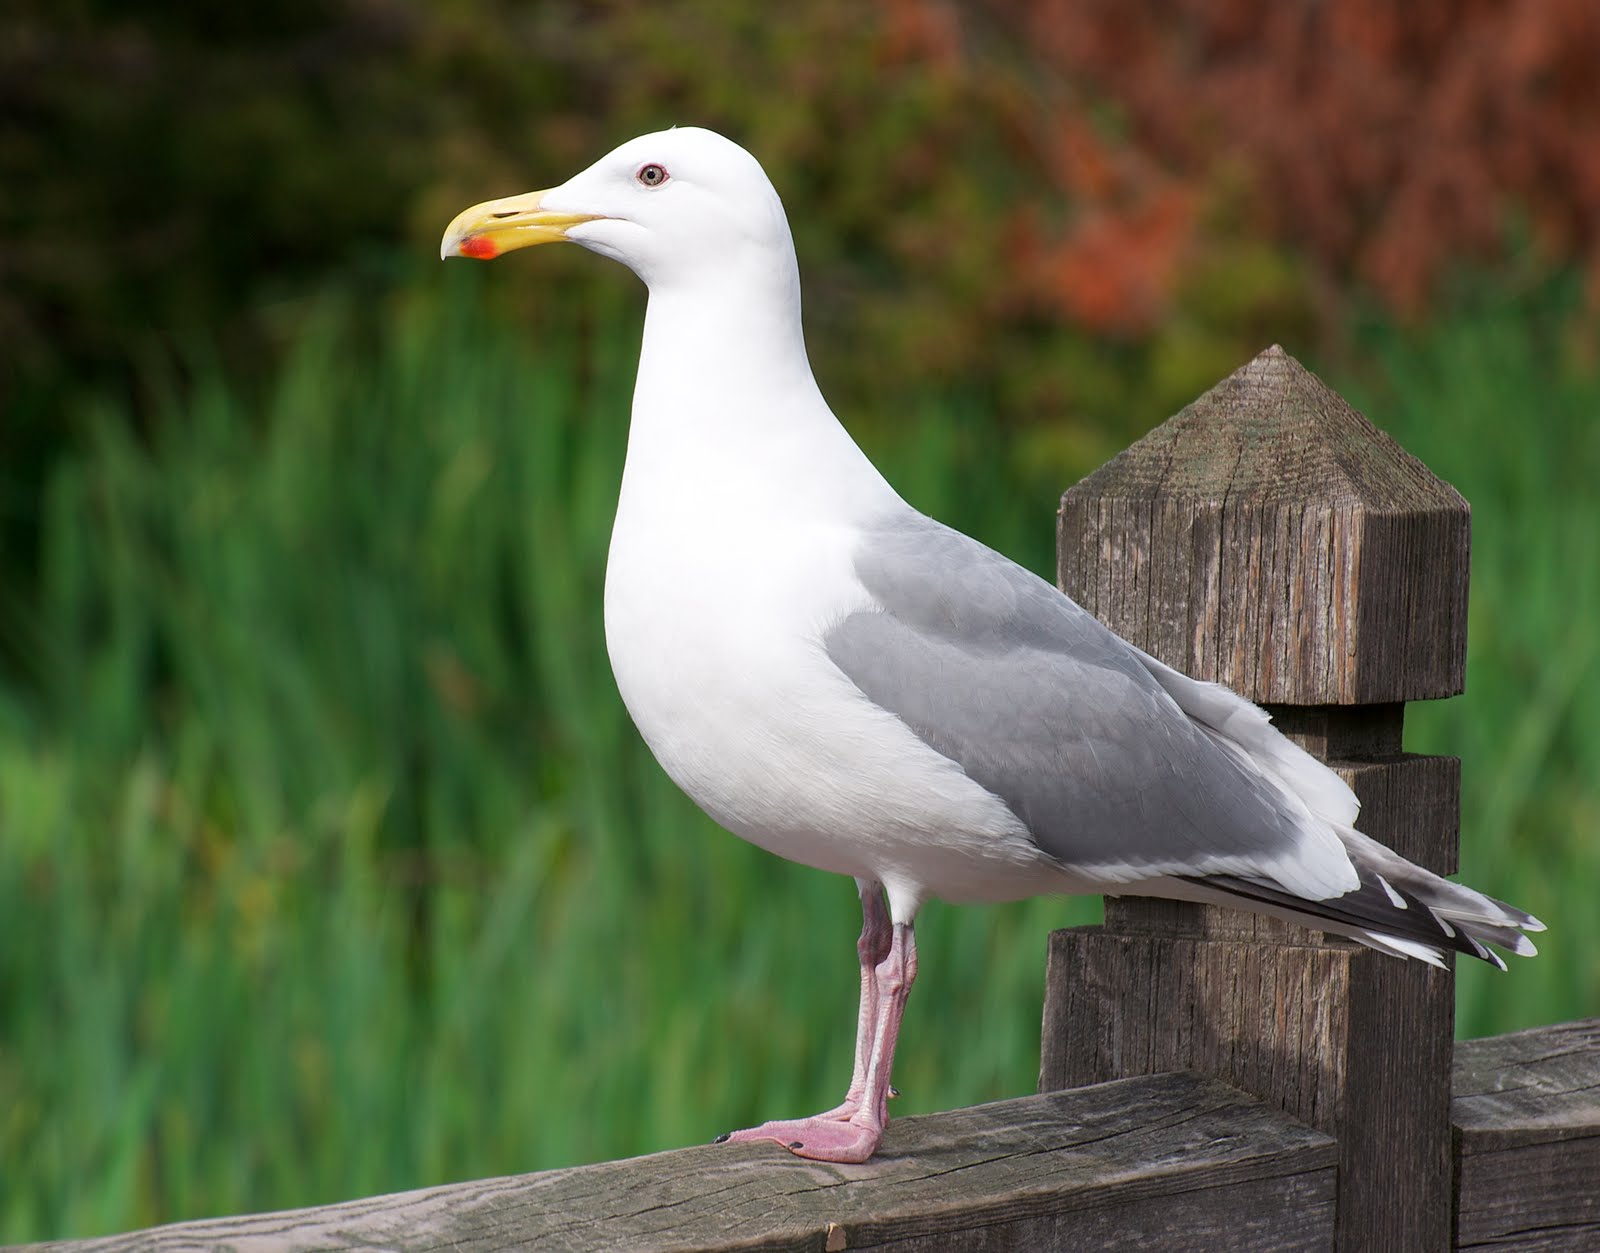 The Herring gull